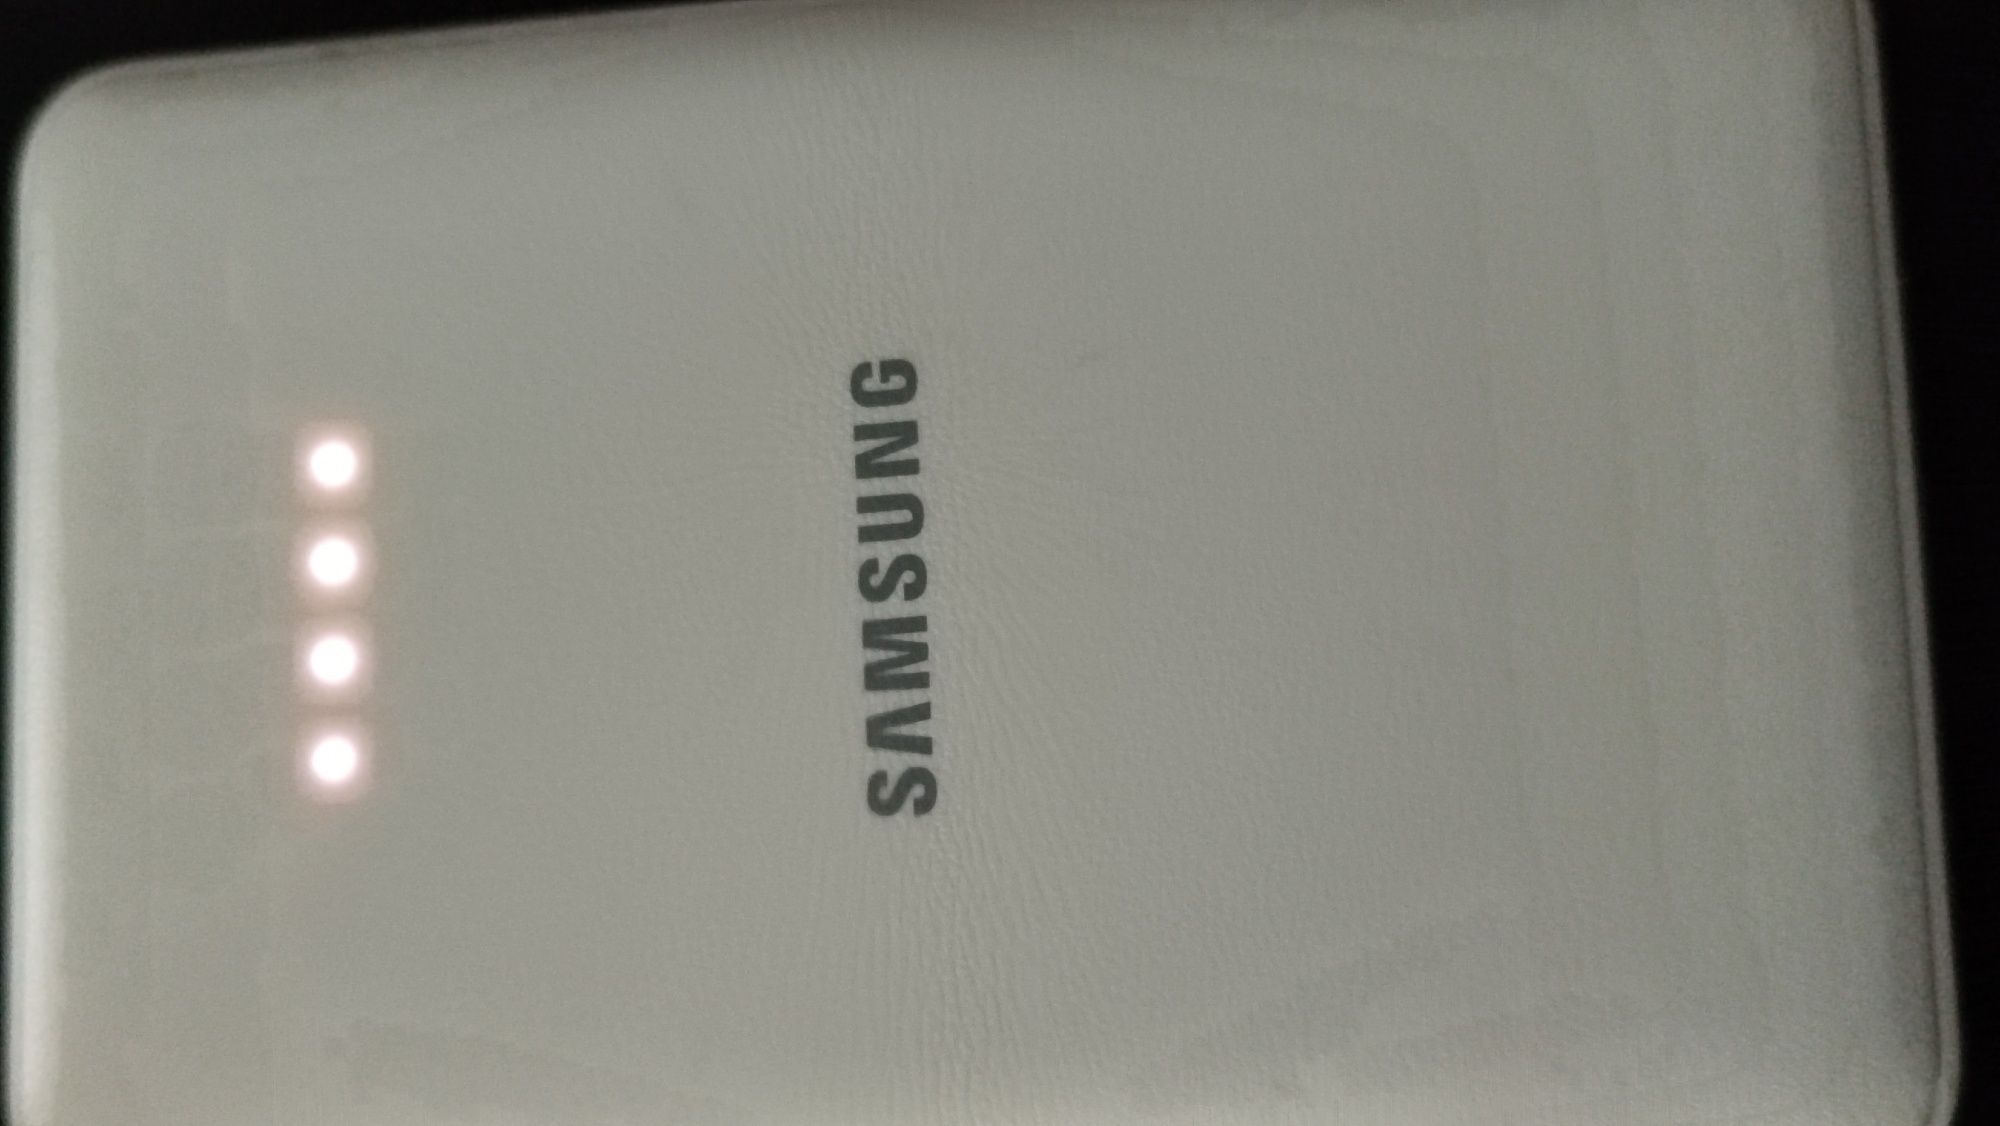 70 lei Baterie externa Samsung